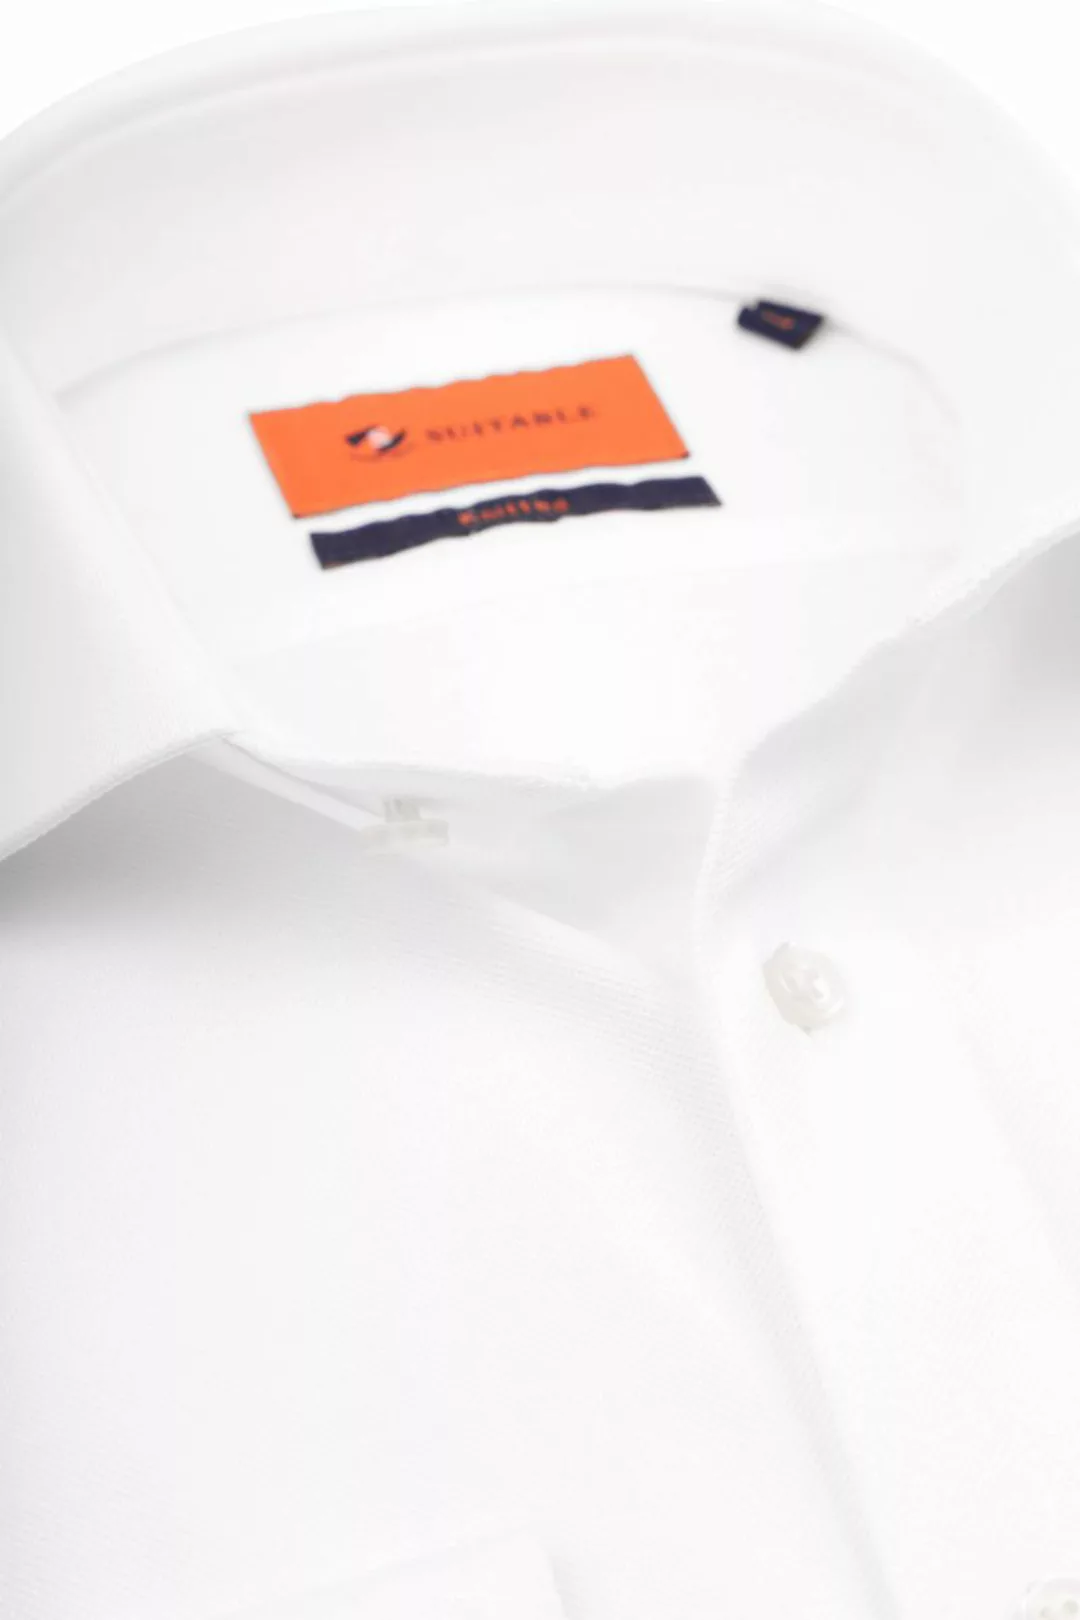 Suitable Hemd Knitted Piqué Weiß - Größe 40 günstig online kaufen